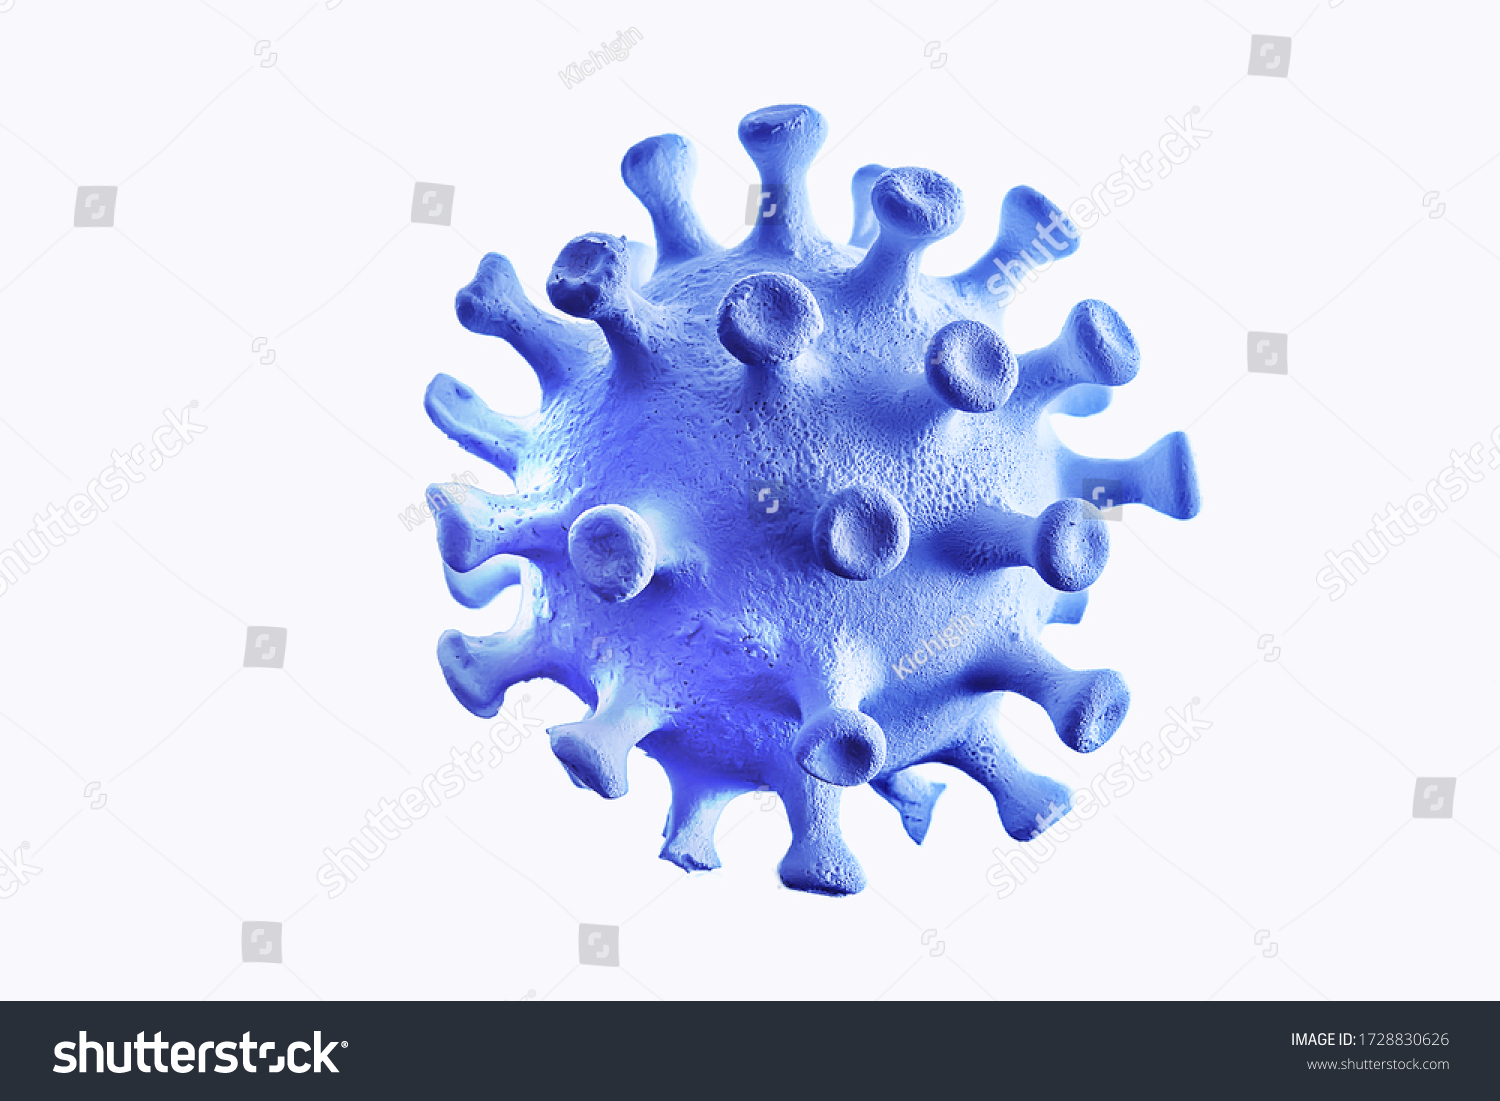 coronavirus model isolated on white background, micro virus photo #1728830626